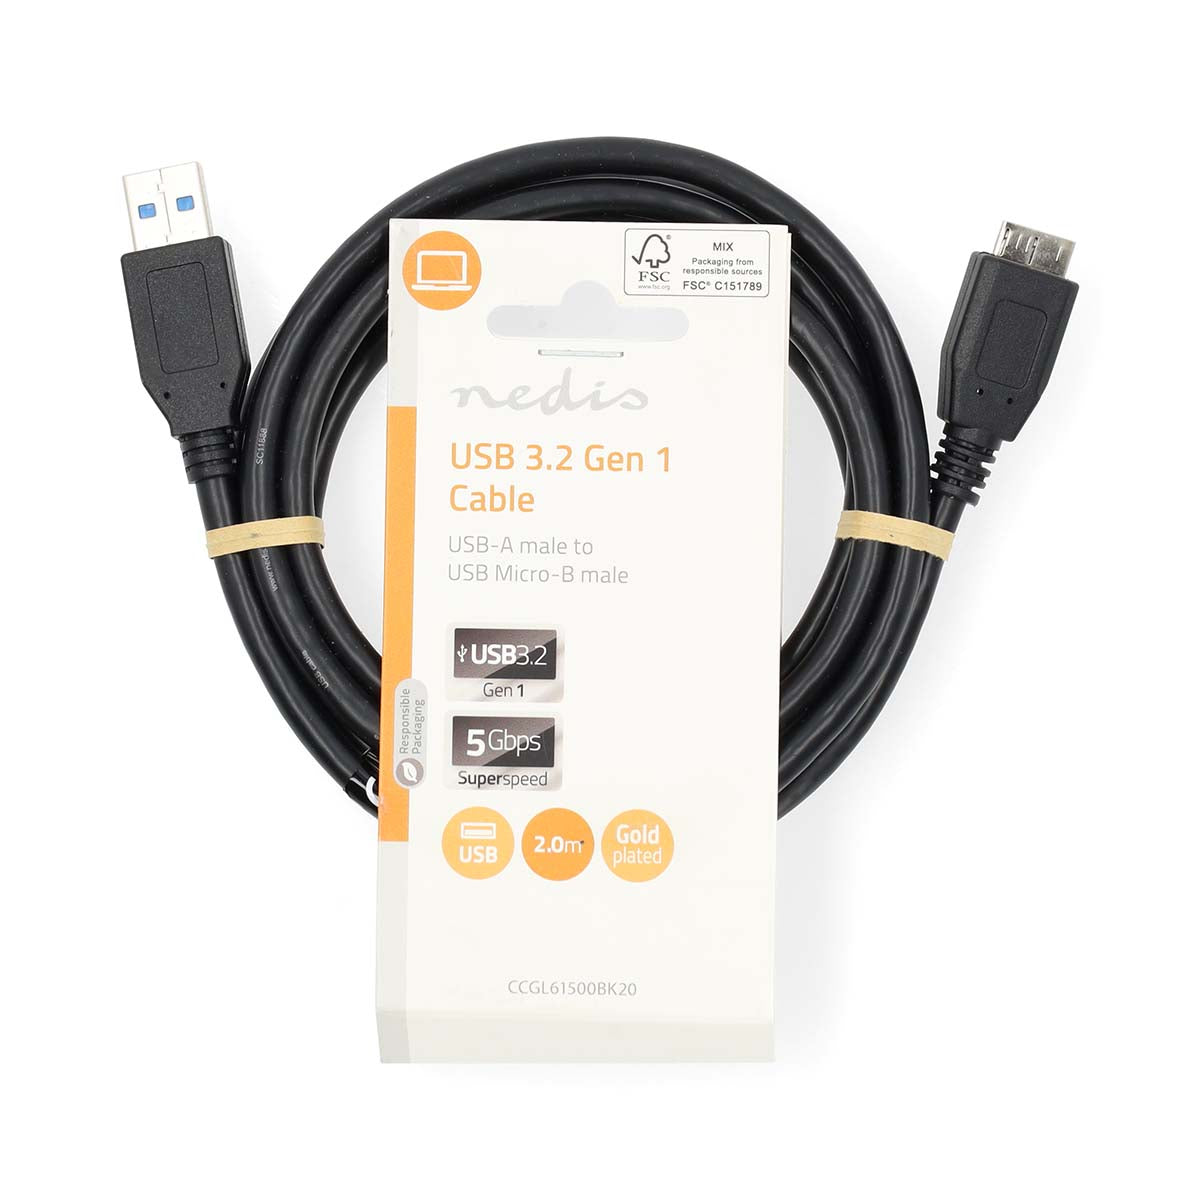 USB-Kabel | USB 3.2 Gen 1 | USB-A Stecker | USB Micro-B Stecker | 5 Gbps | Vernickelt | 2.00 m | Rund | PVC | Blau | Label